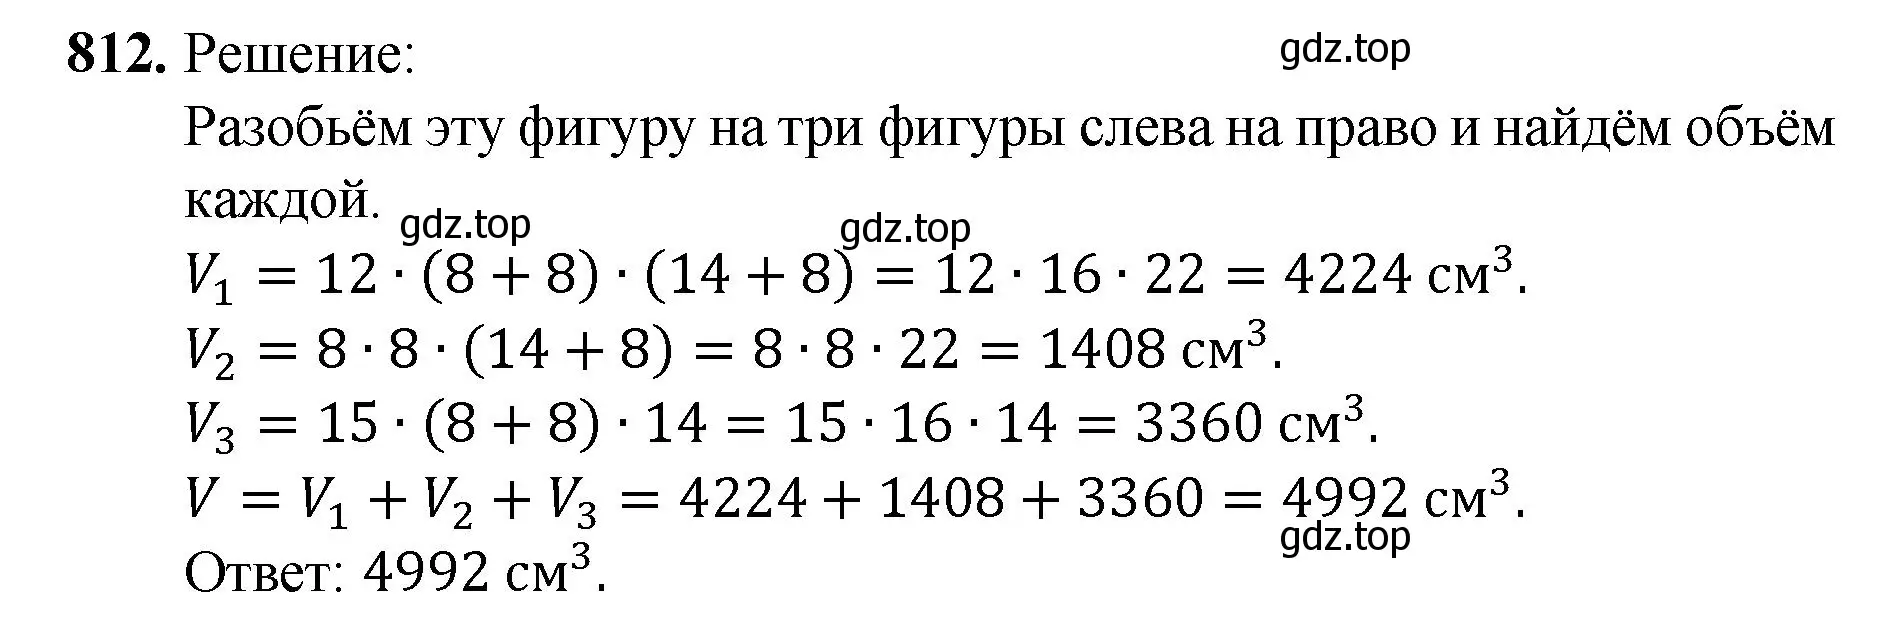 Решение номер 812 (страница 182) гдз по математике 5 класс Мерзляк, Полонский, учебник